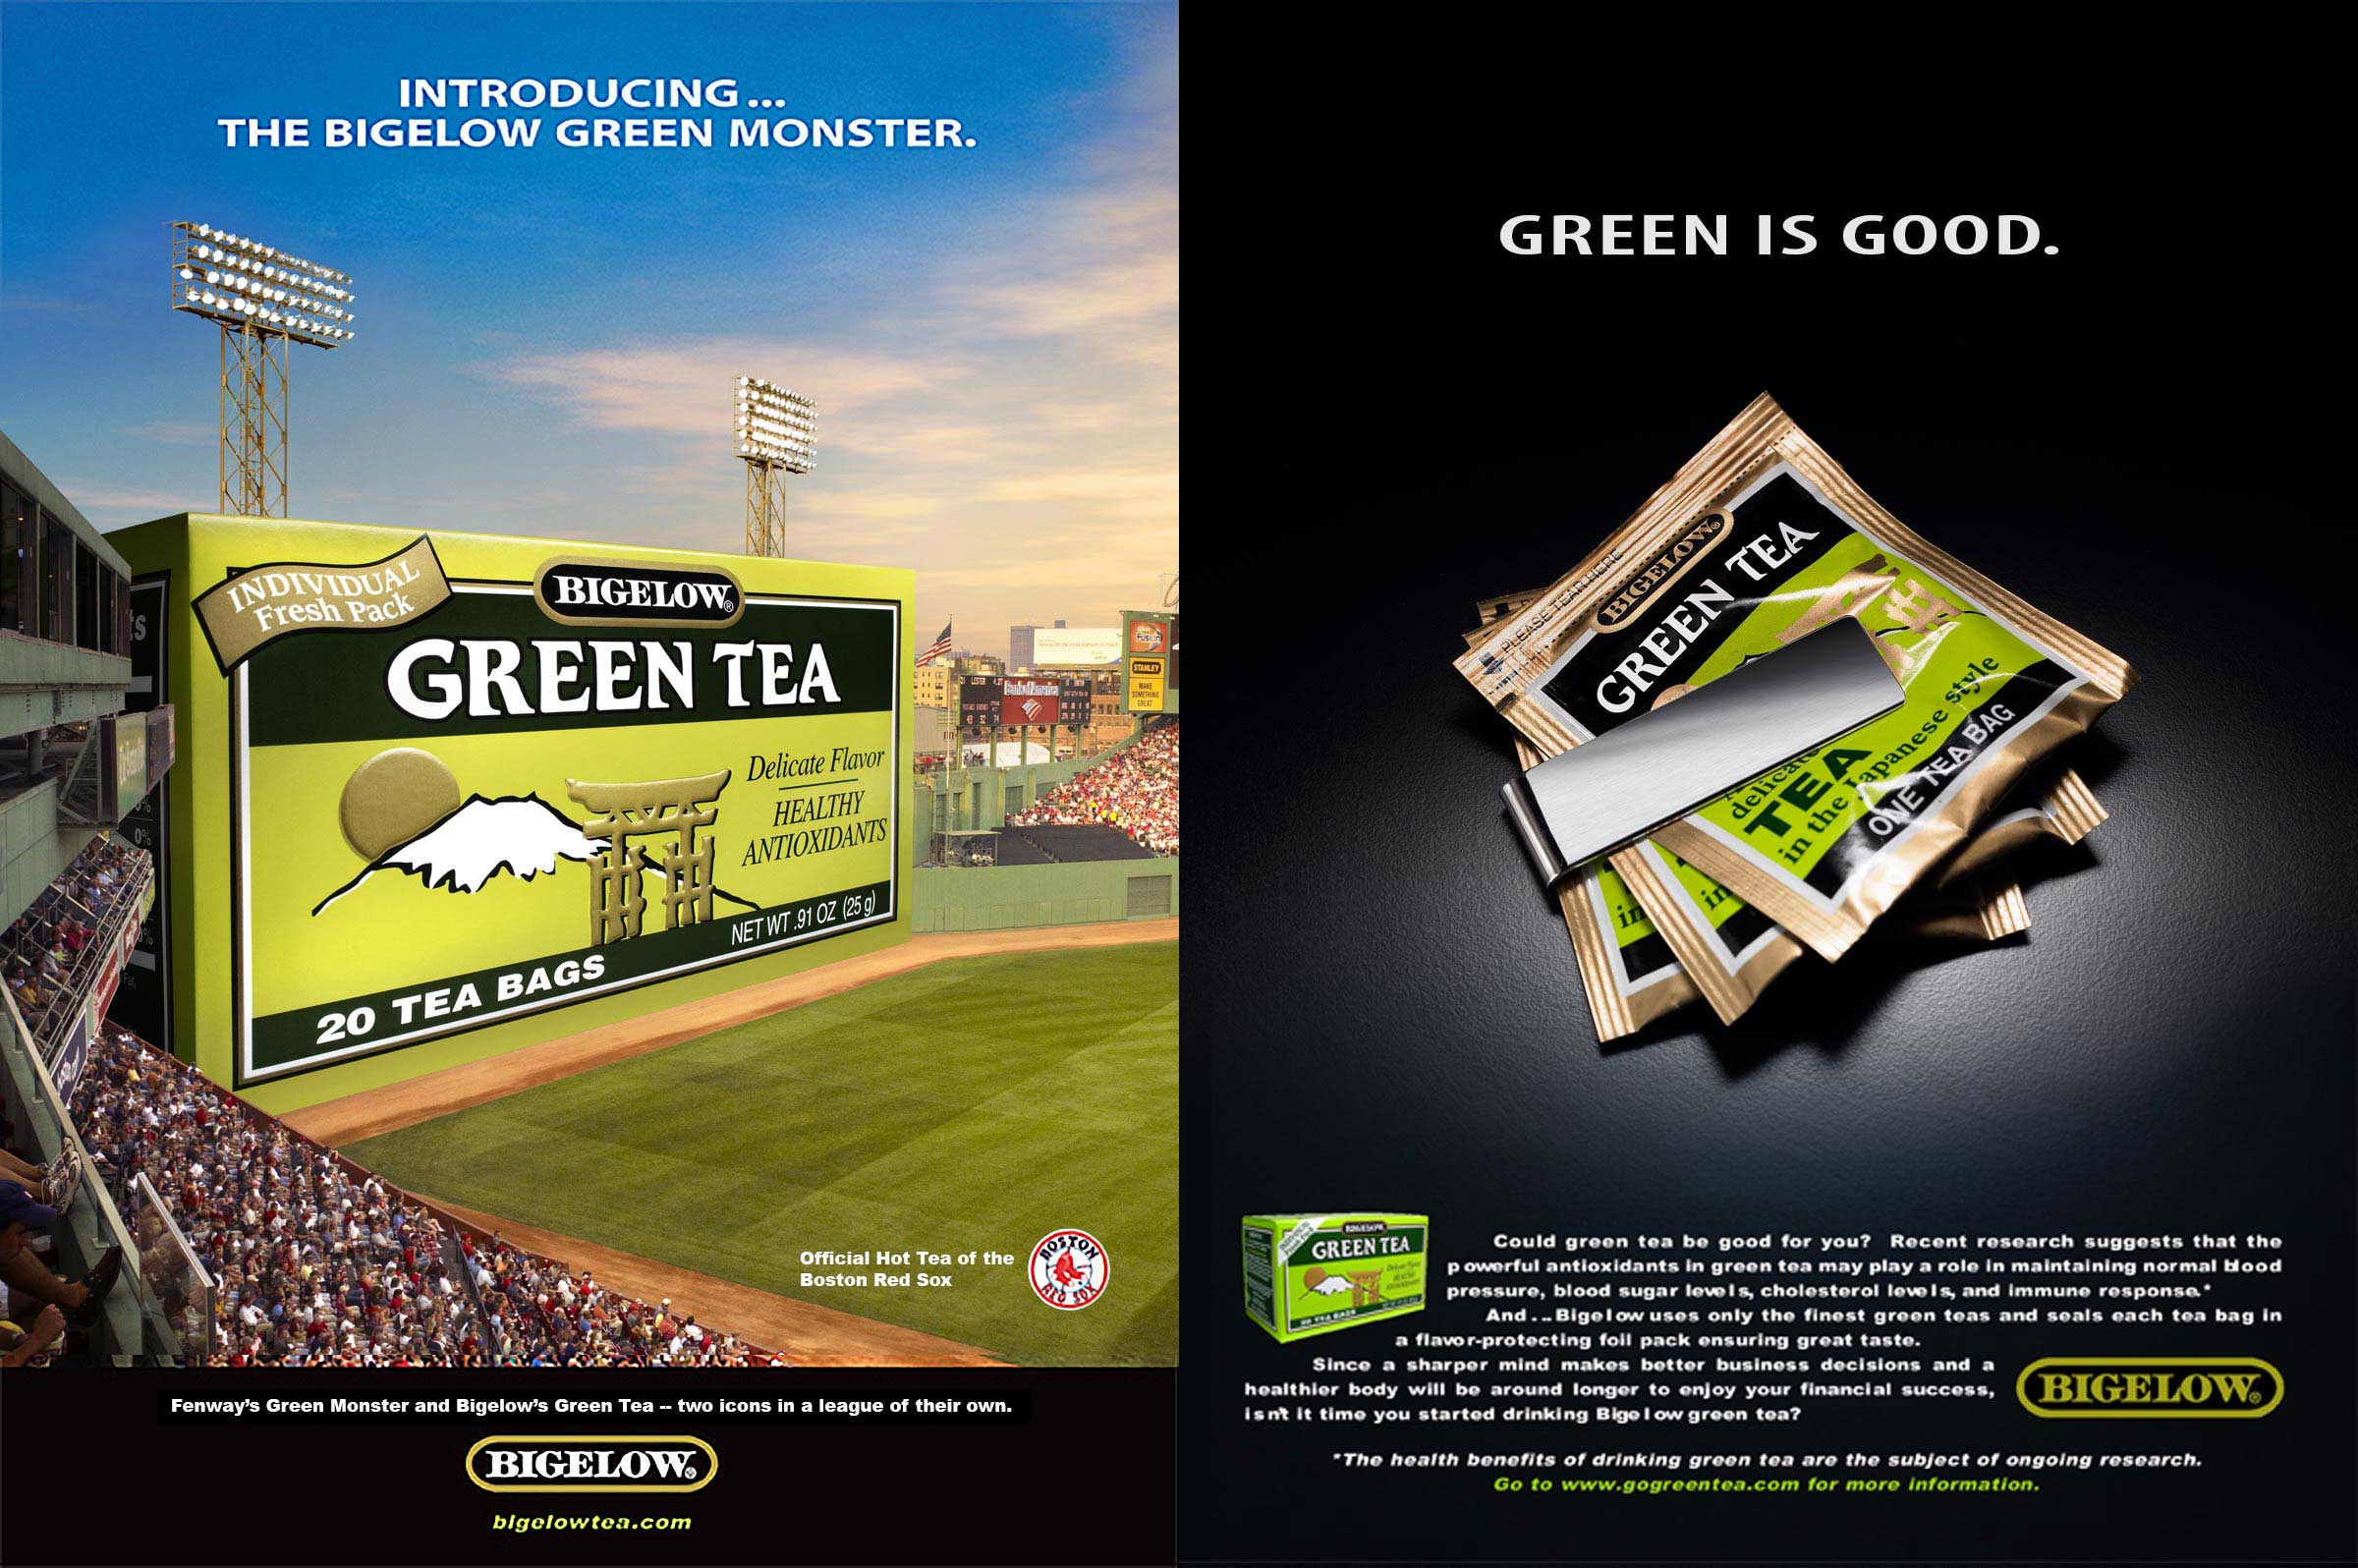 Bigelow-Green-Monster-moneyclip-ads2.jpg